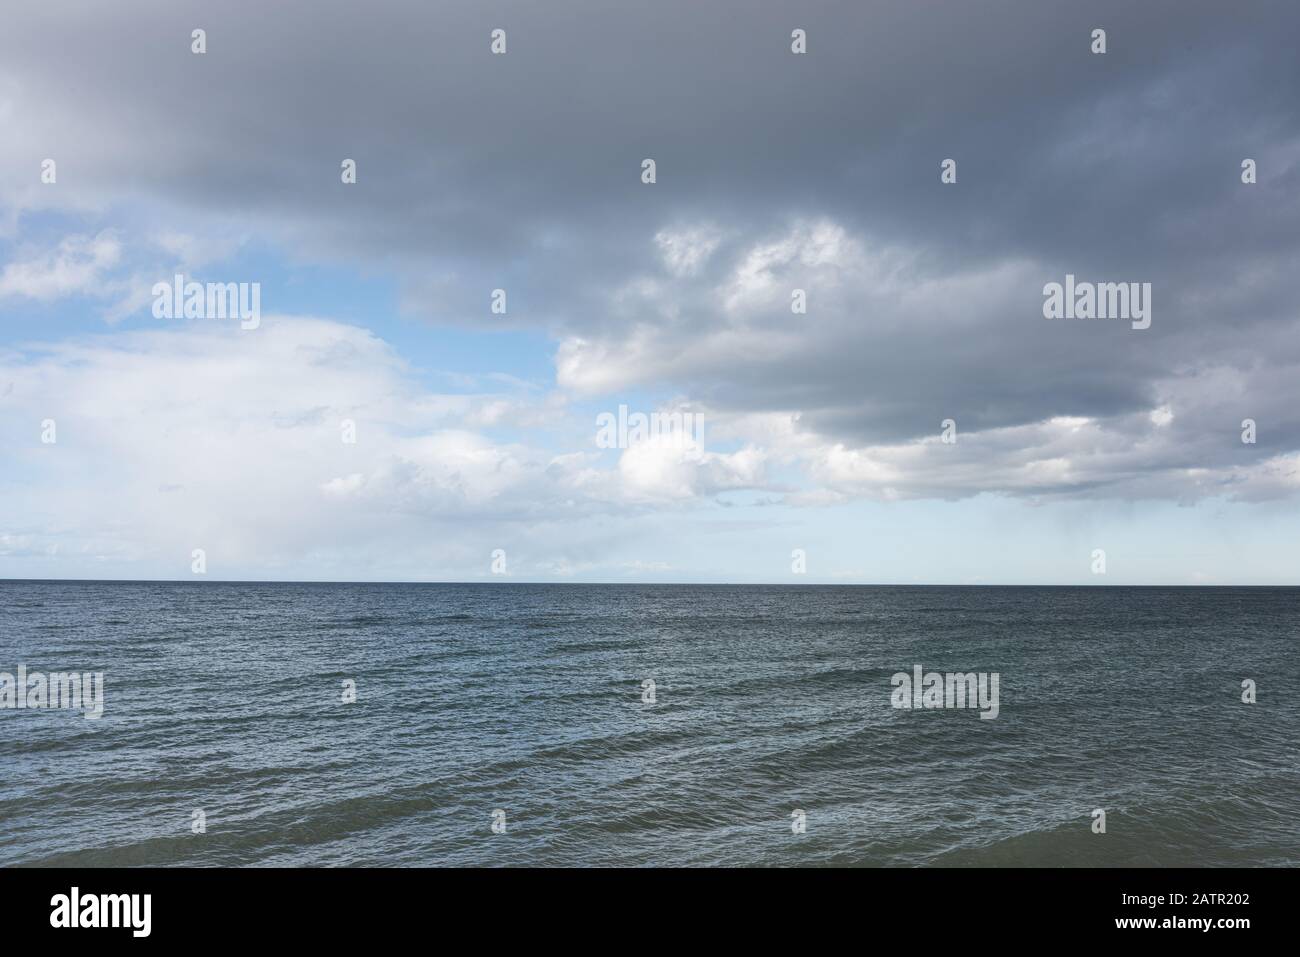 Images of the Scottish Morayshire coastline Stock Photo - Alamy